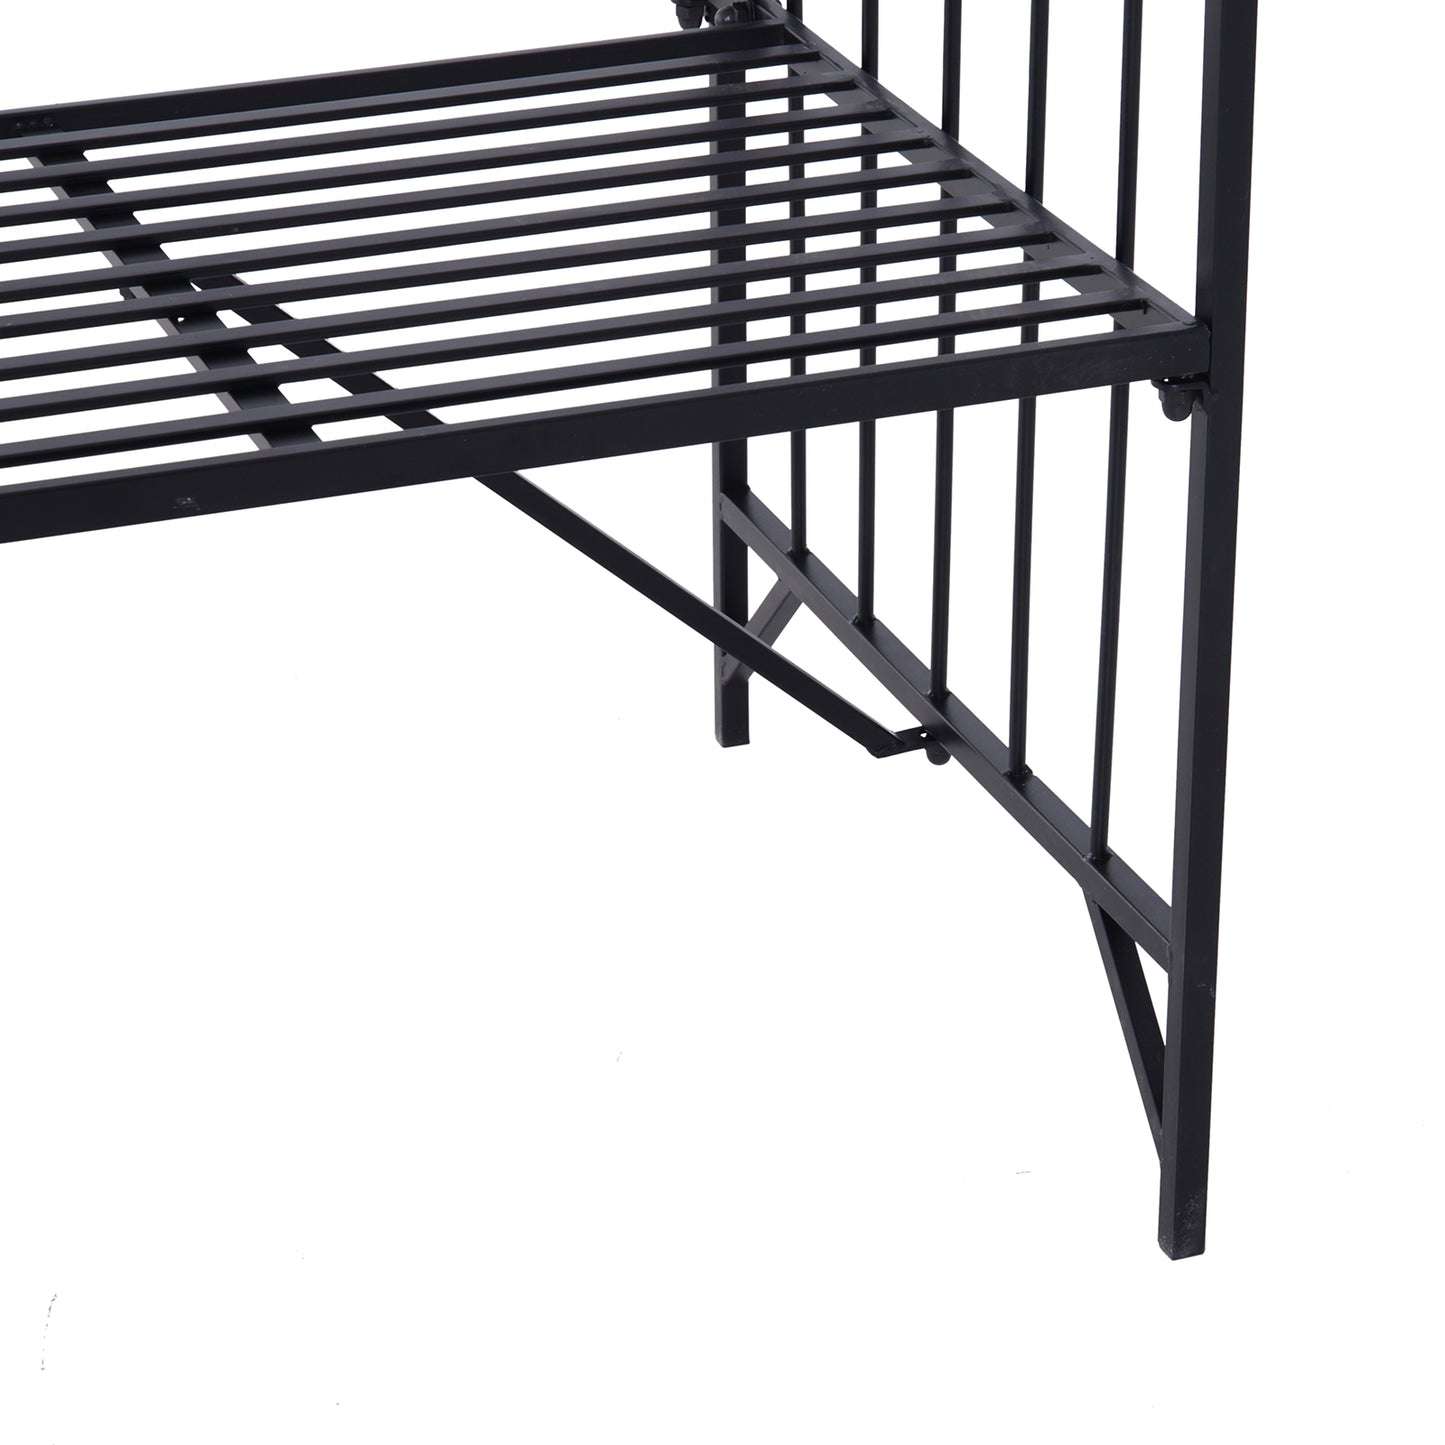 Outsunny Metal Frame Bench W/Arch, 115Lx59Wx203H cm-Black